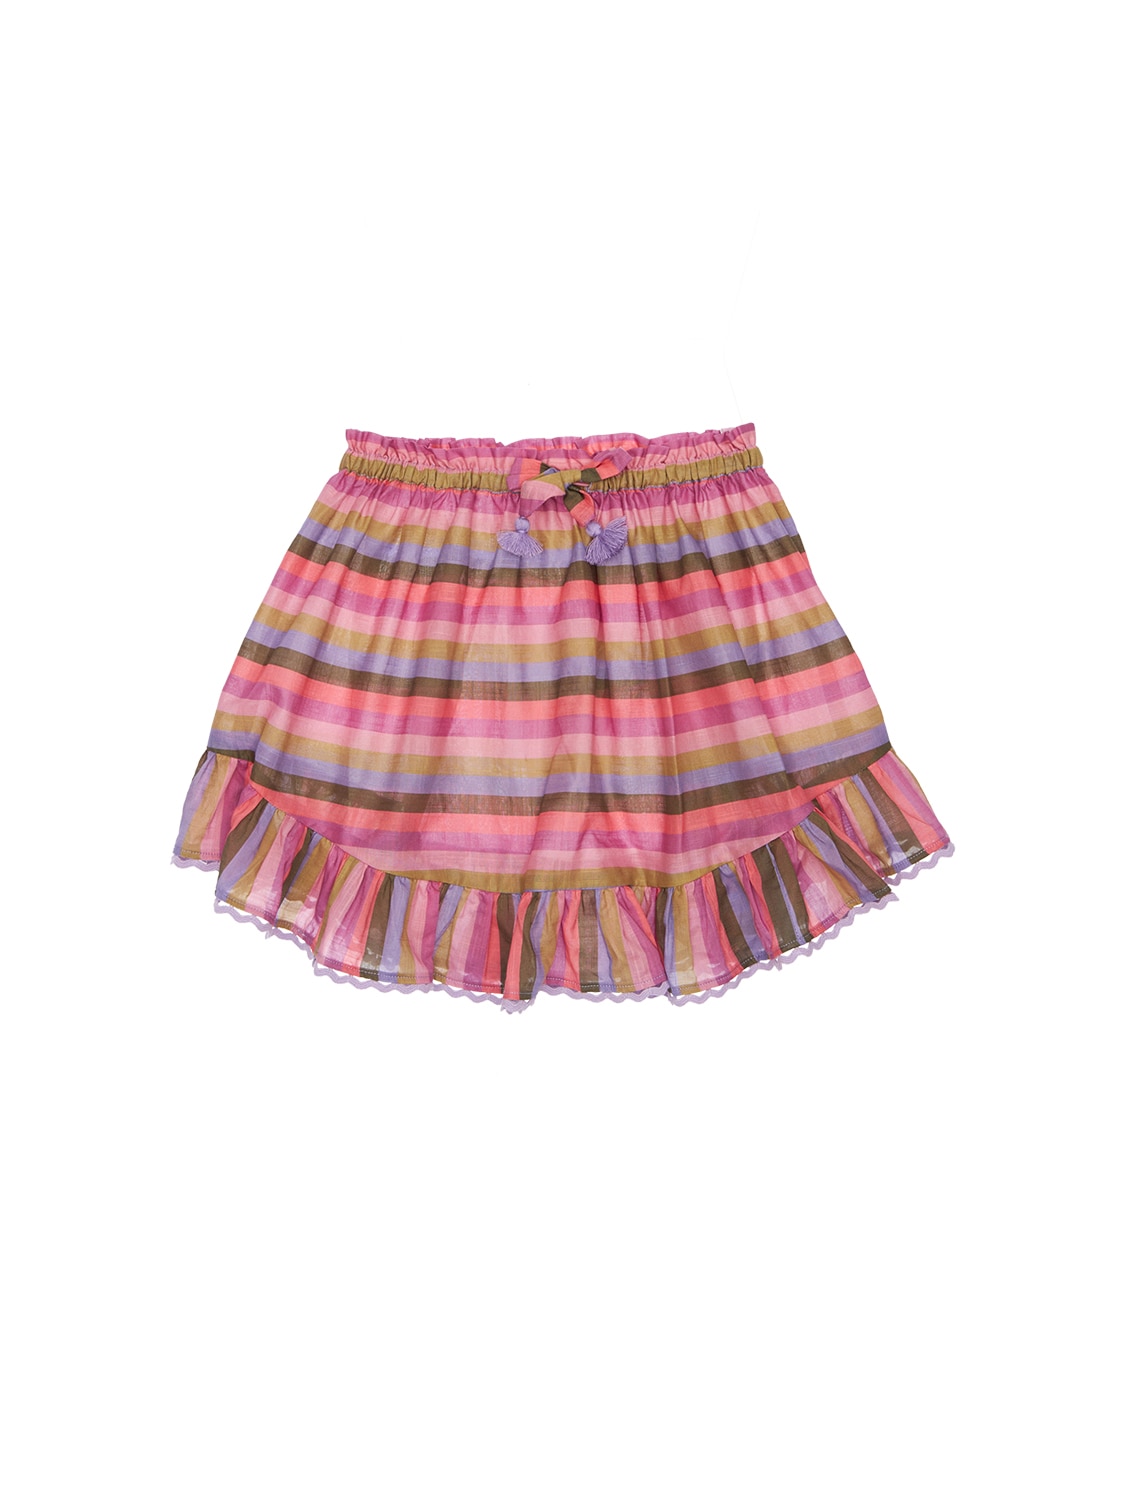 Stripes Print Cotton Muslin Skirt